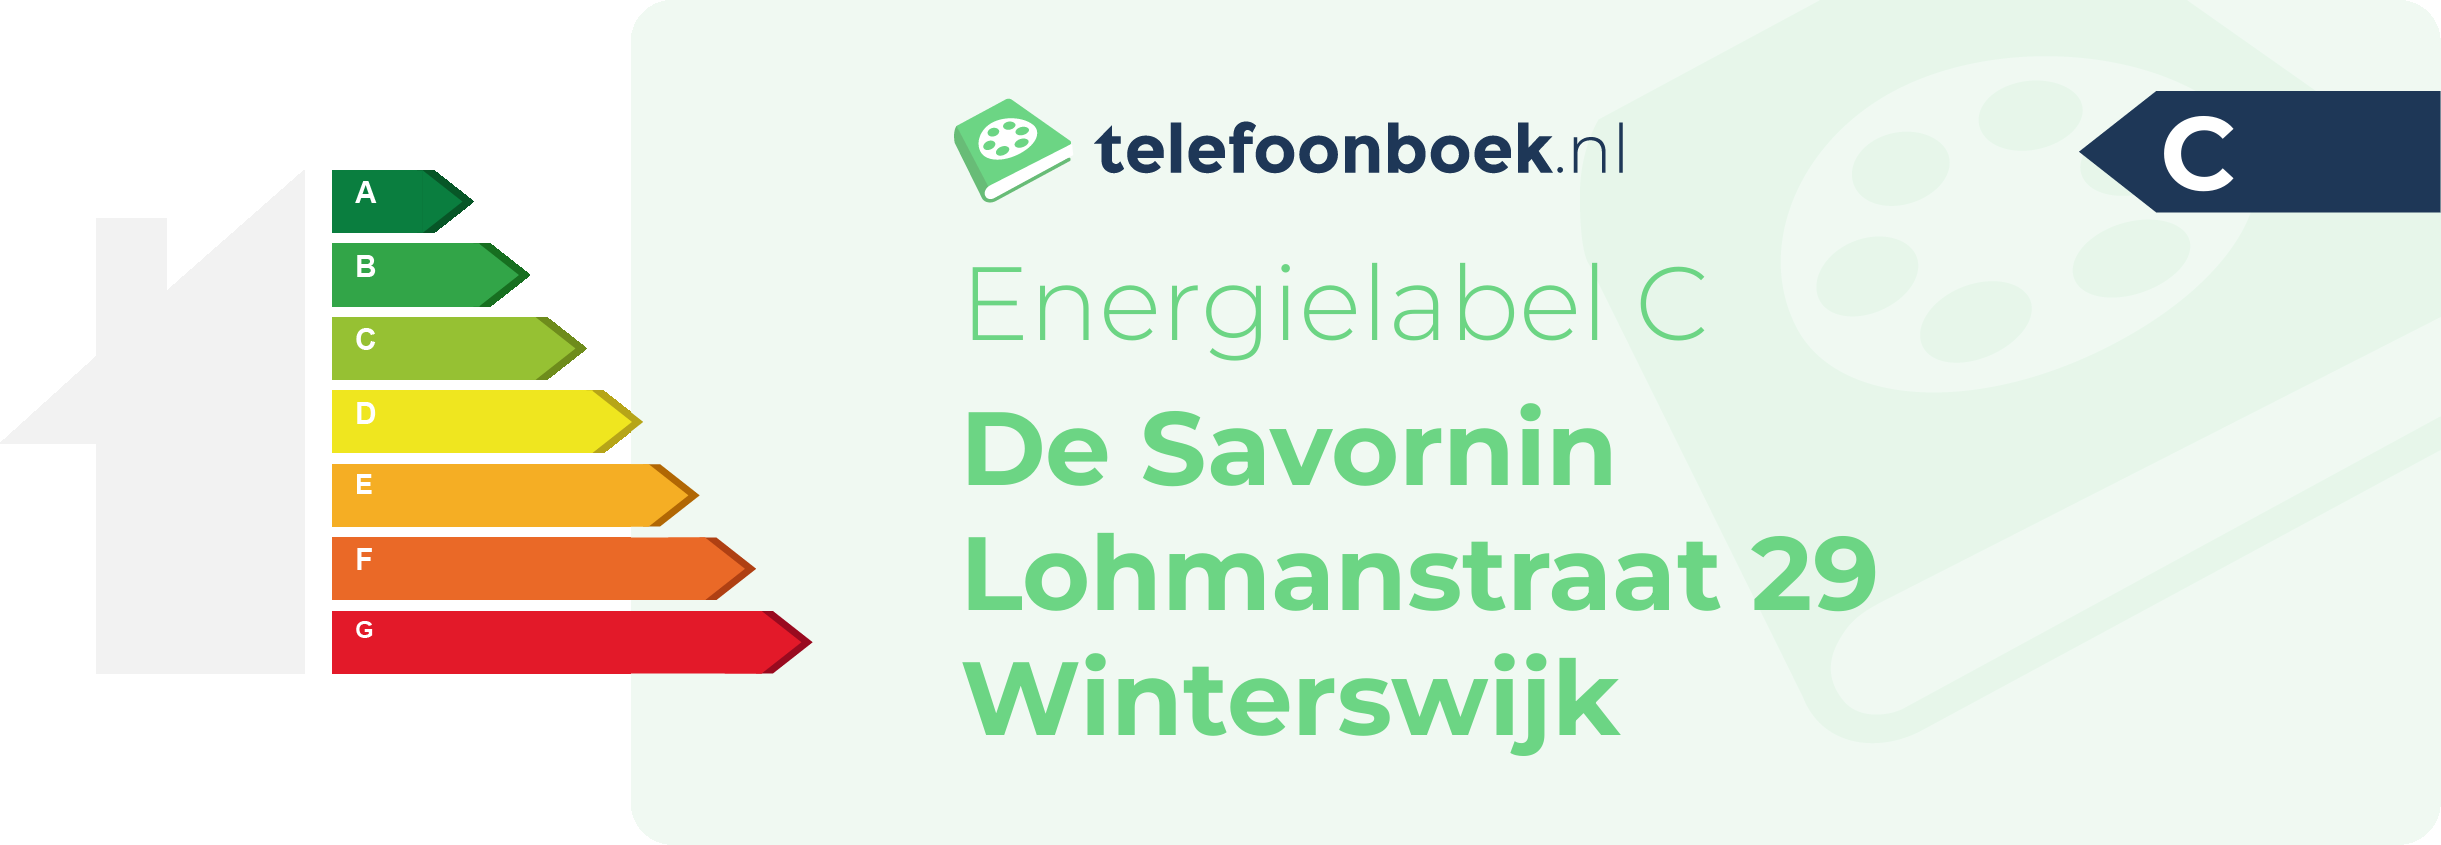 Energielabel De Savornin Lohmanstraat 29 Winterswijk